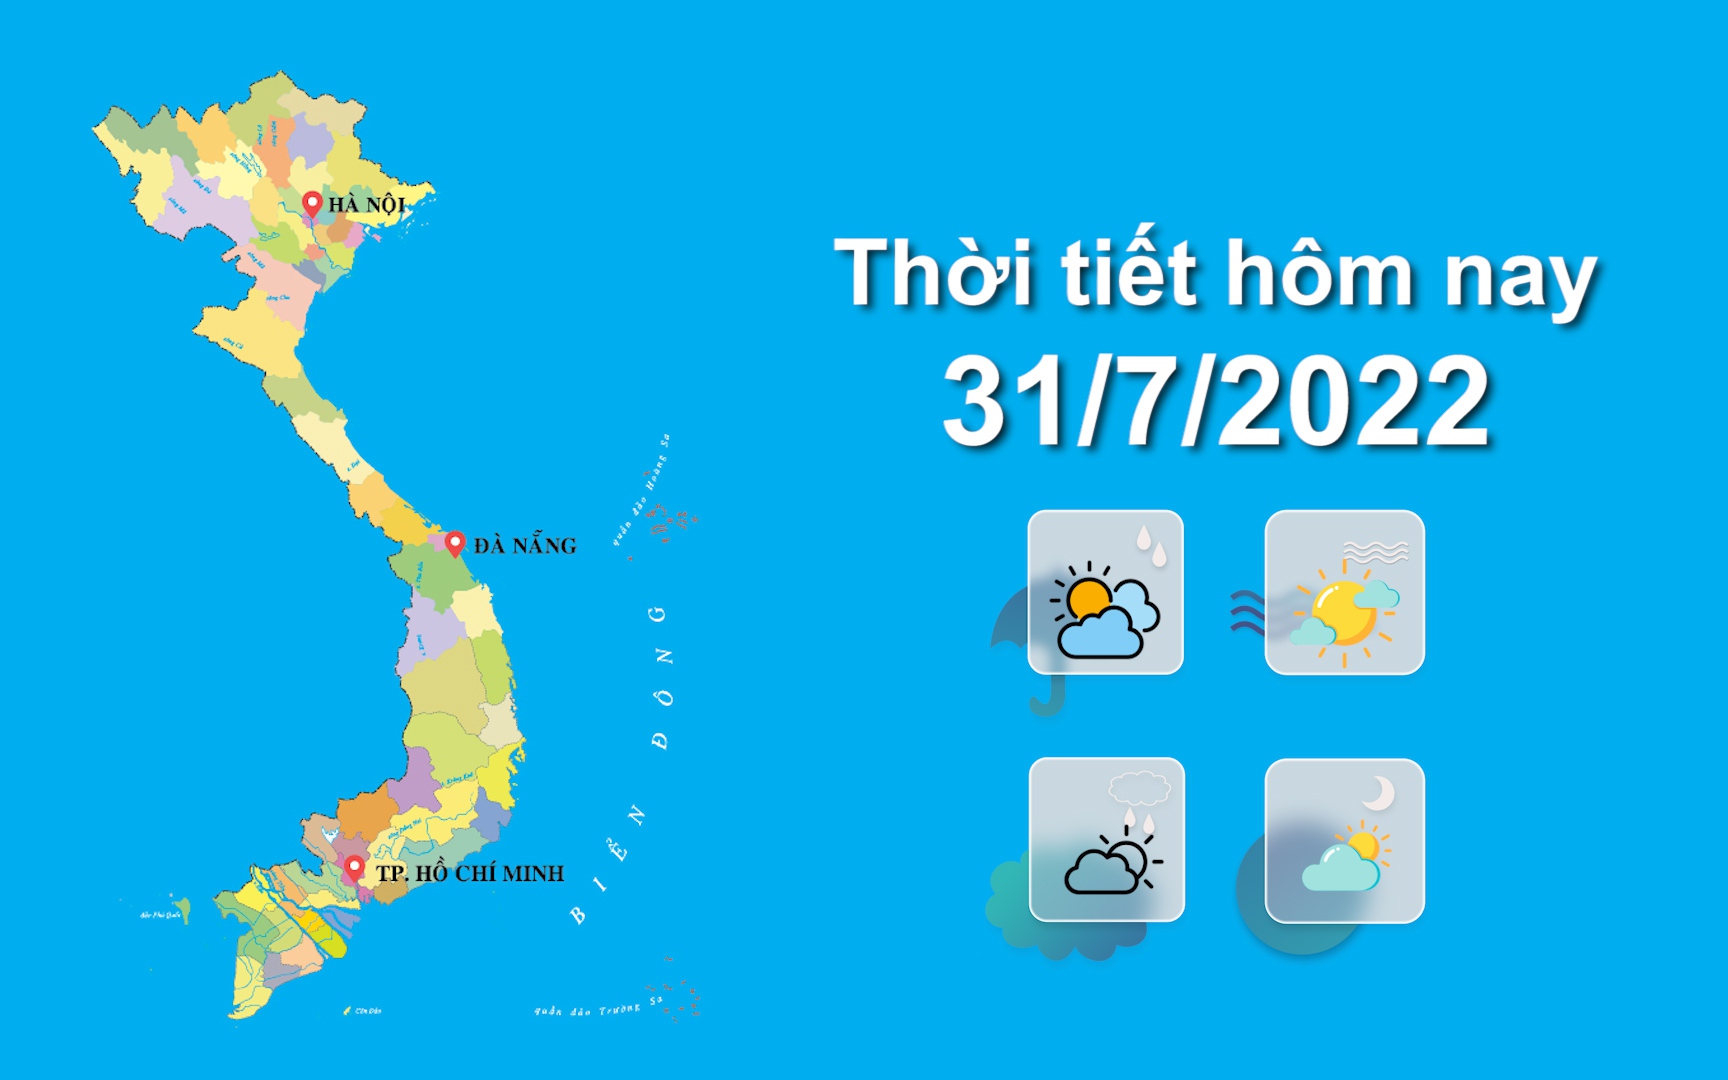 Thời tiết hôm nay 31/7/2022: Hà Nội mưa có to kèm lốc sét và gió giật mạnh